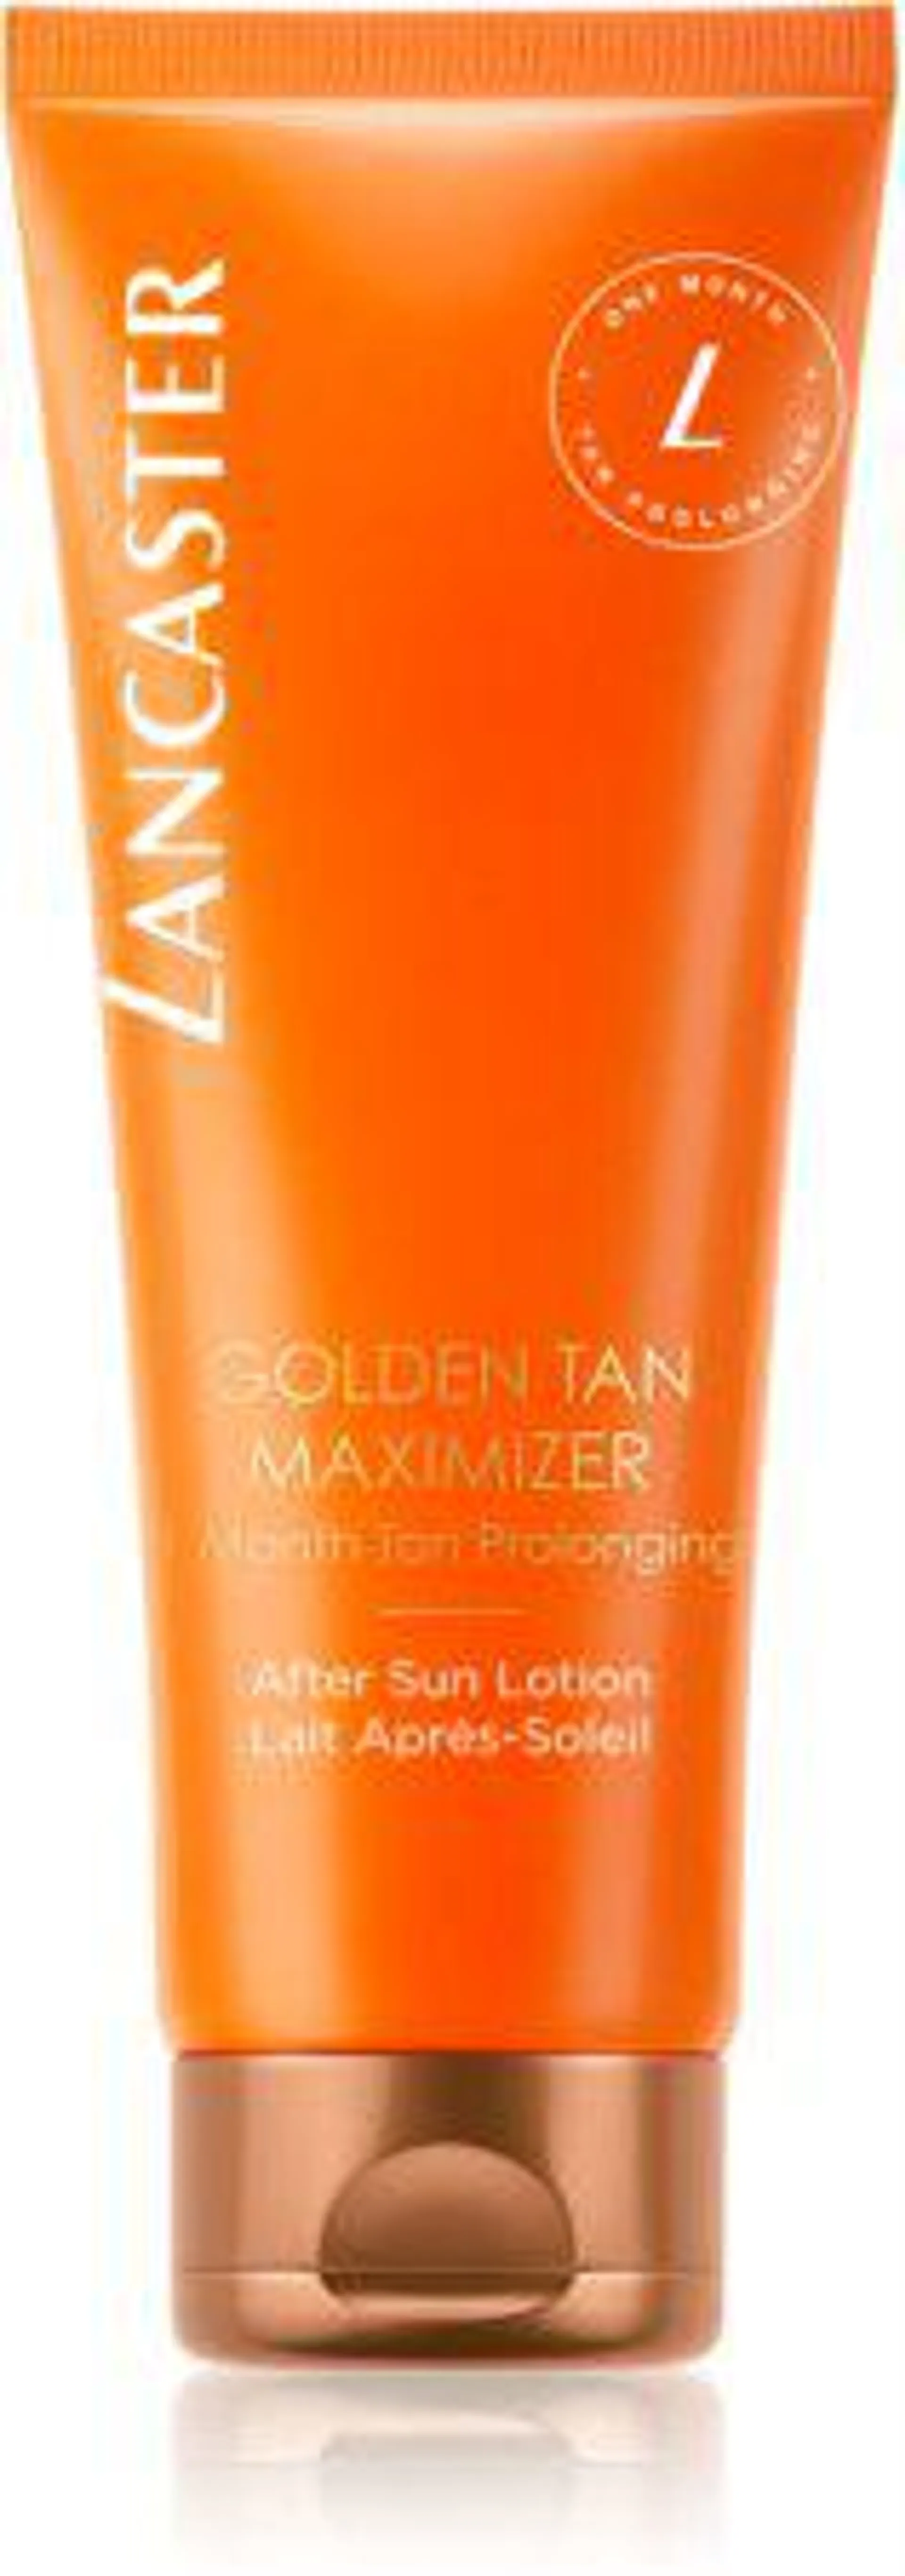 Golden Tan Maximizer After Sun Lotion